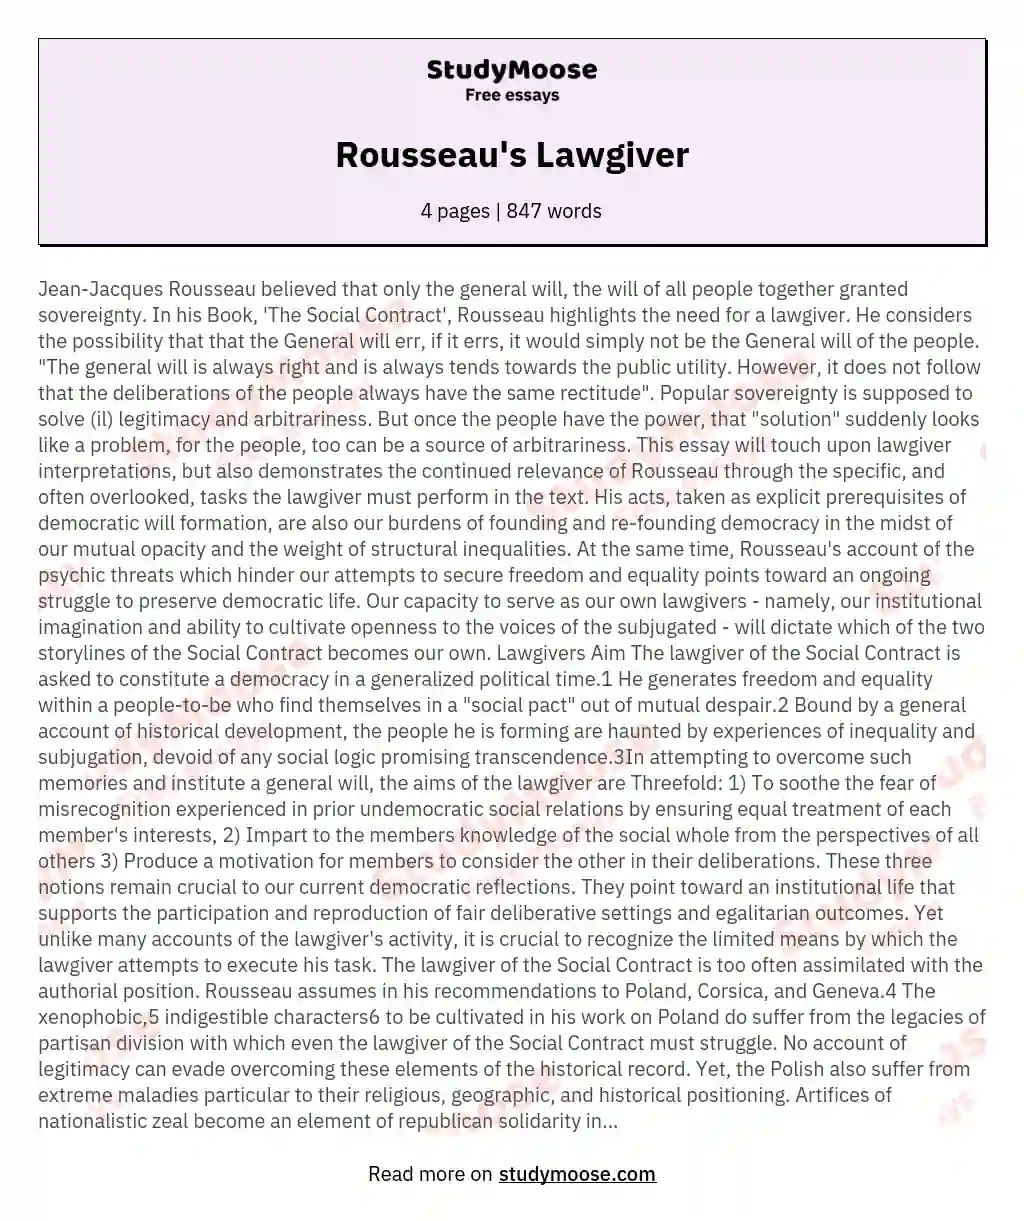 Rousseau's Lawgiver